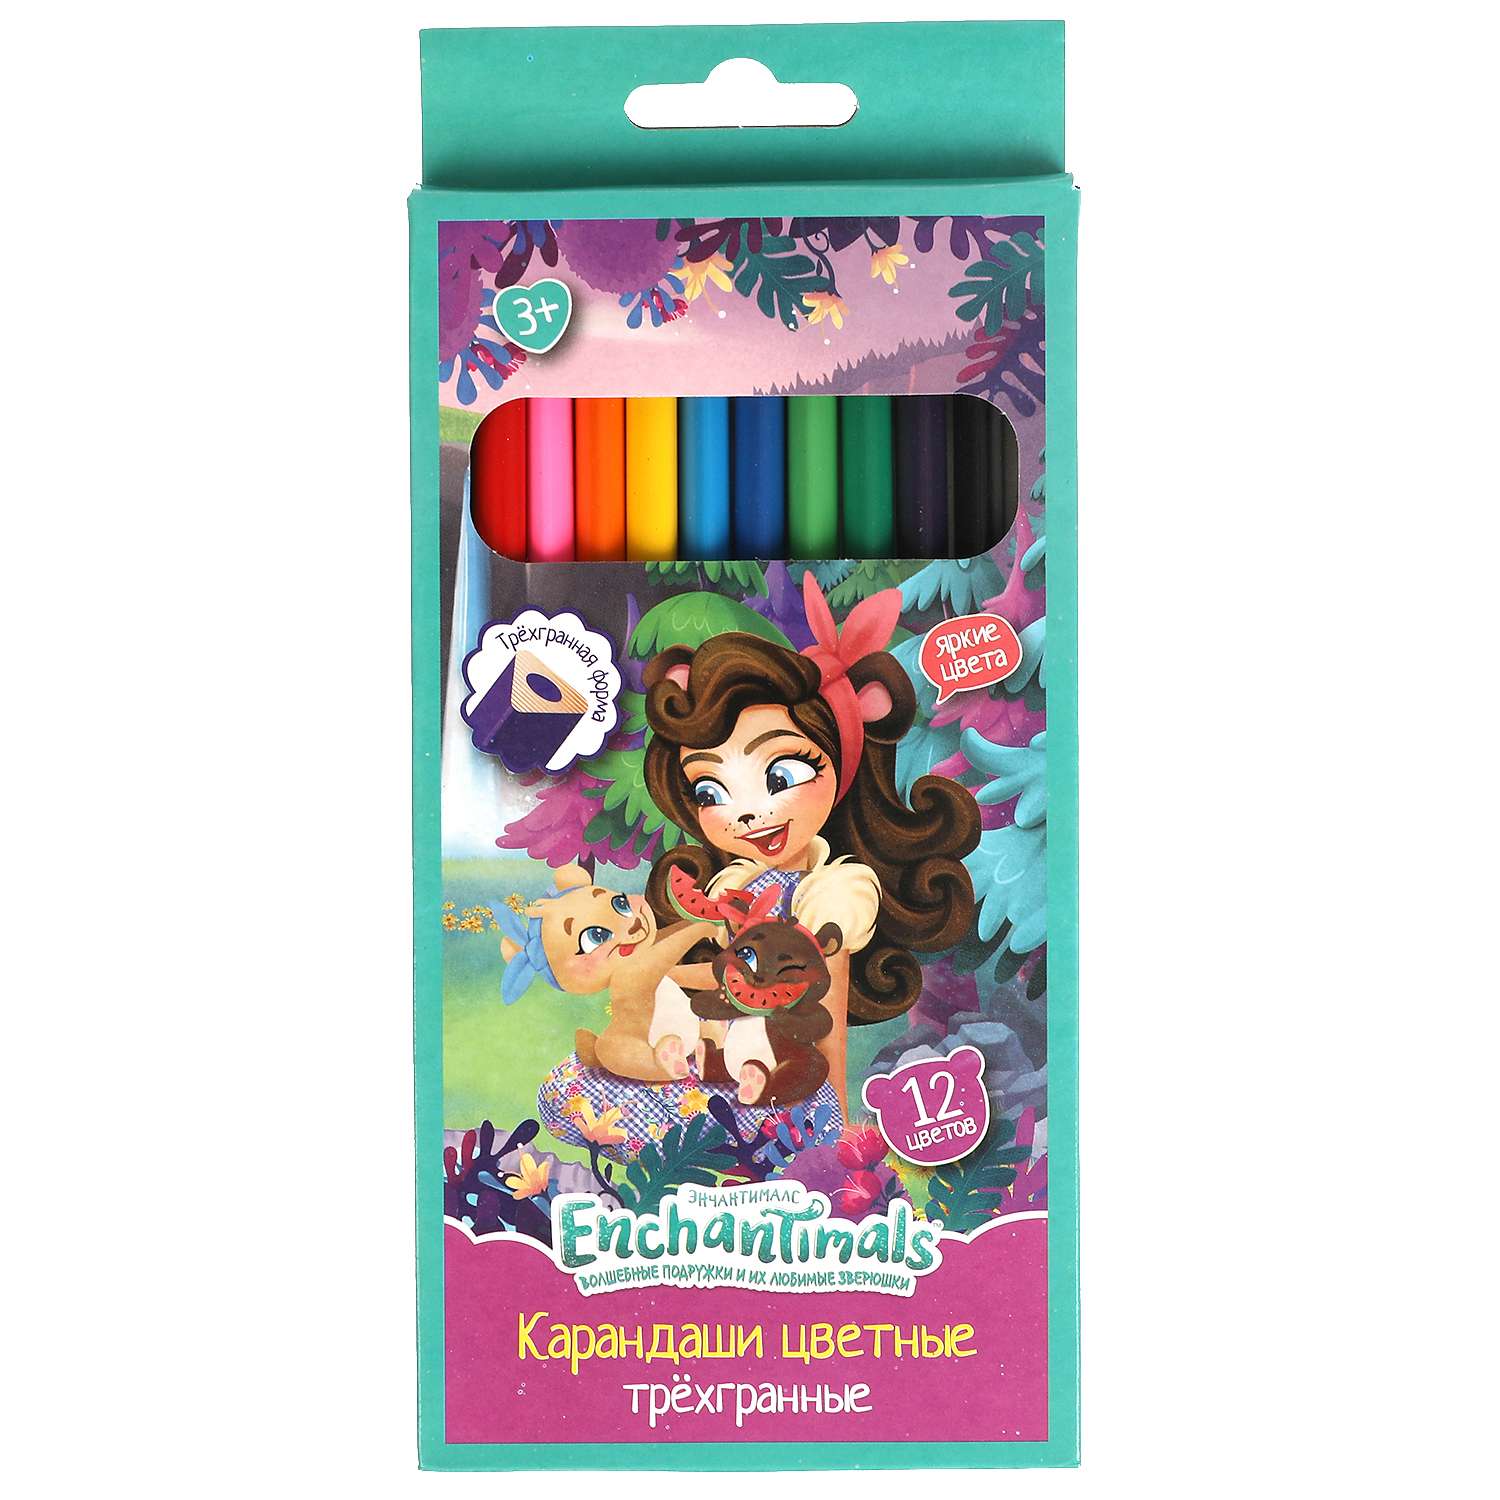 Цветные карандаши Умка Enchantimals 12 цветов трёхгранные 313757 - фото 1